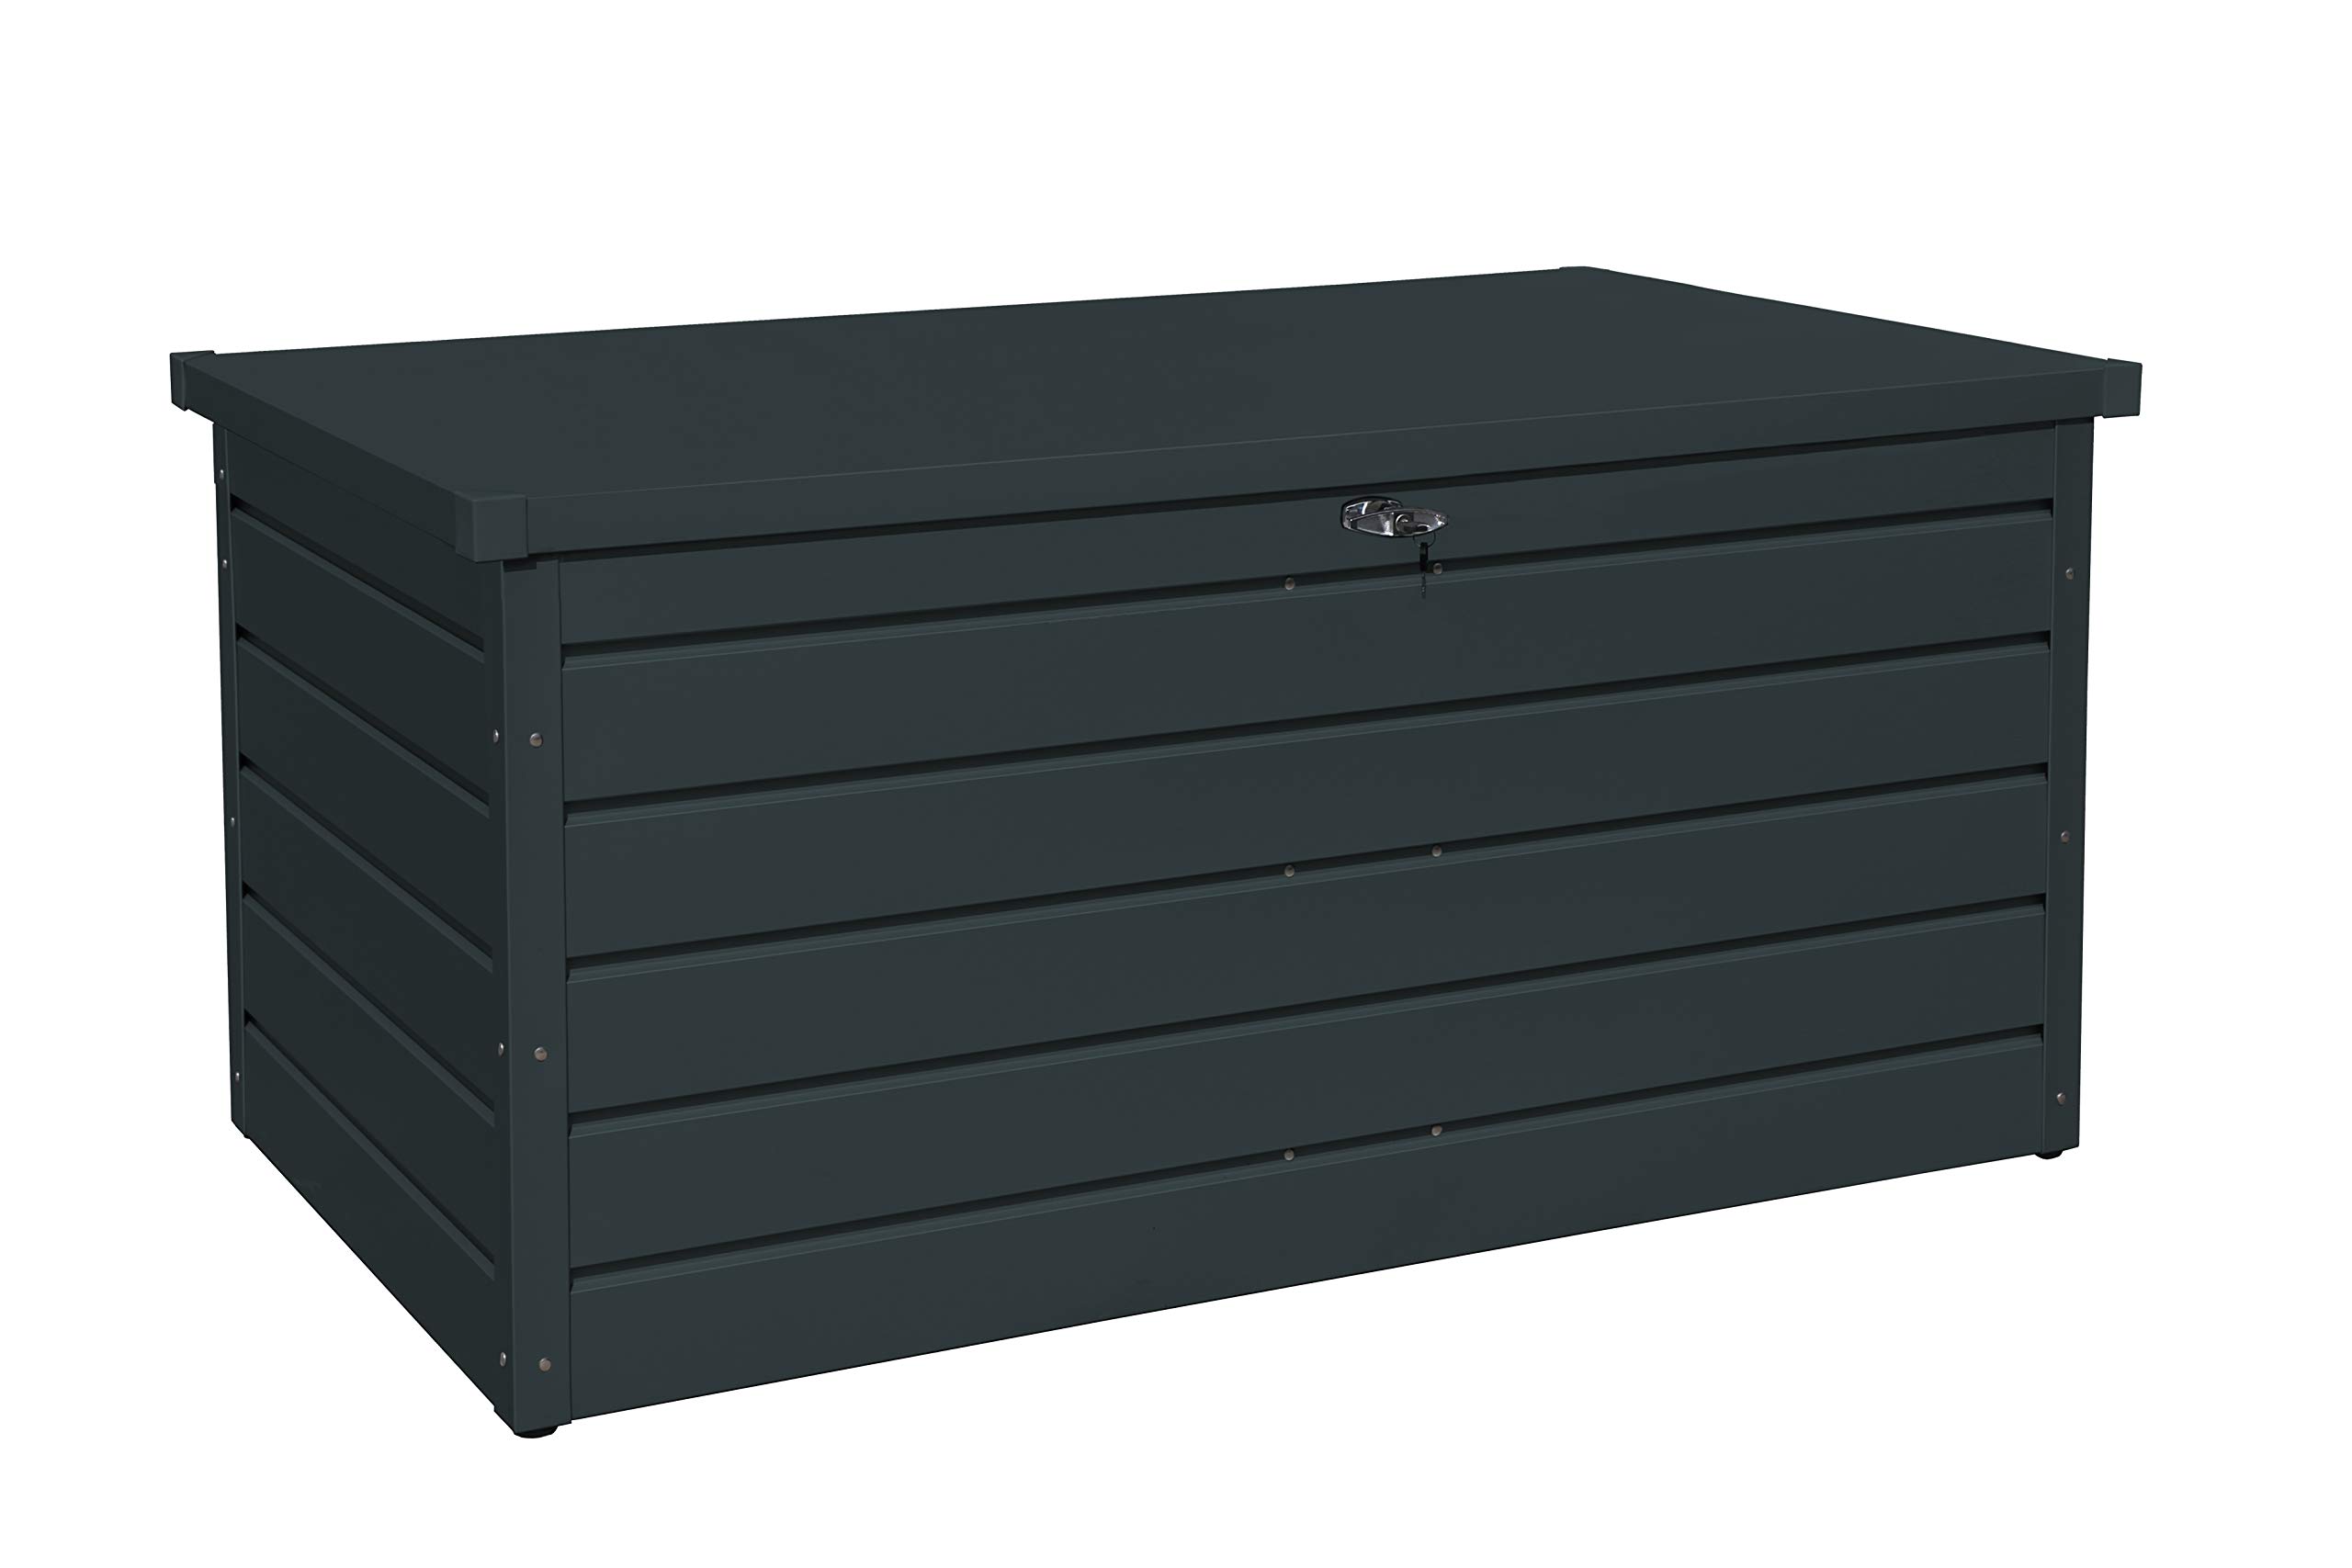 Duramax Palladium Kissenbox aus Metall groß (865 L) mit hydraulischer Gasdruckfeder und abschließbarem Griff mit Schlüssel, Terrassenbox und Gartenmöbelaufbewahrung, Anthrazit